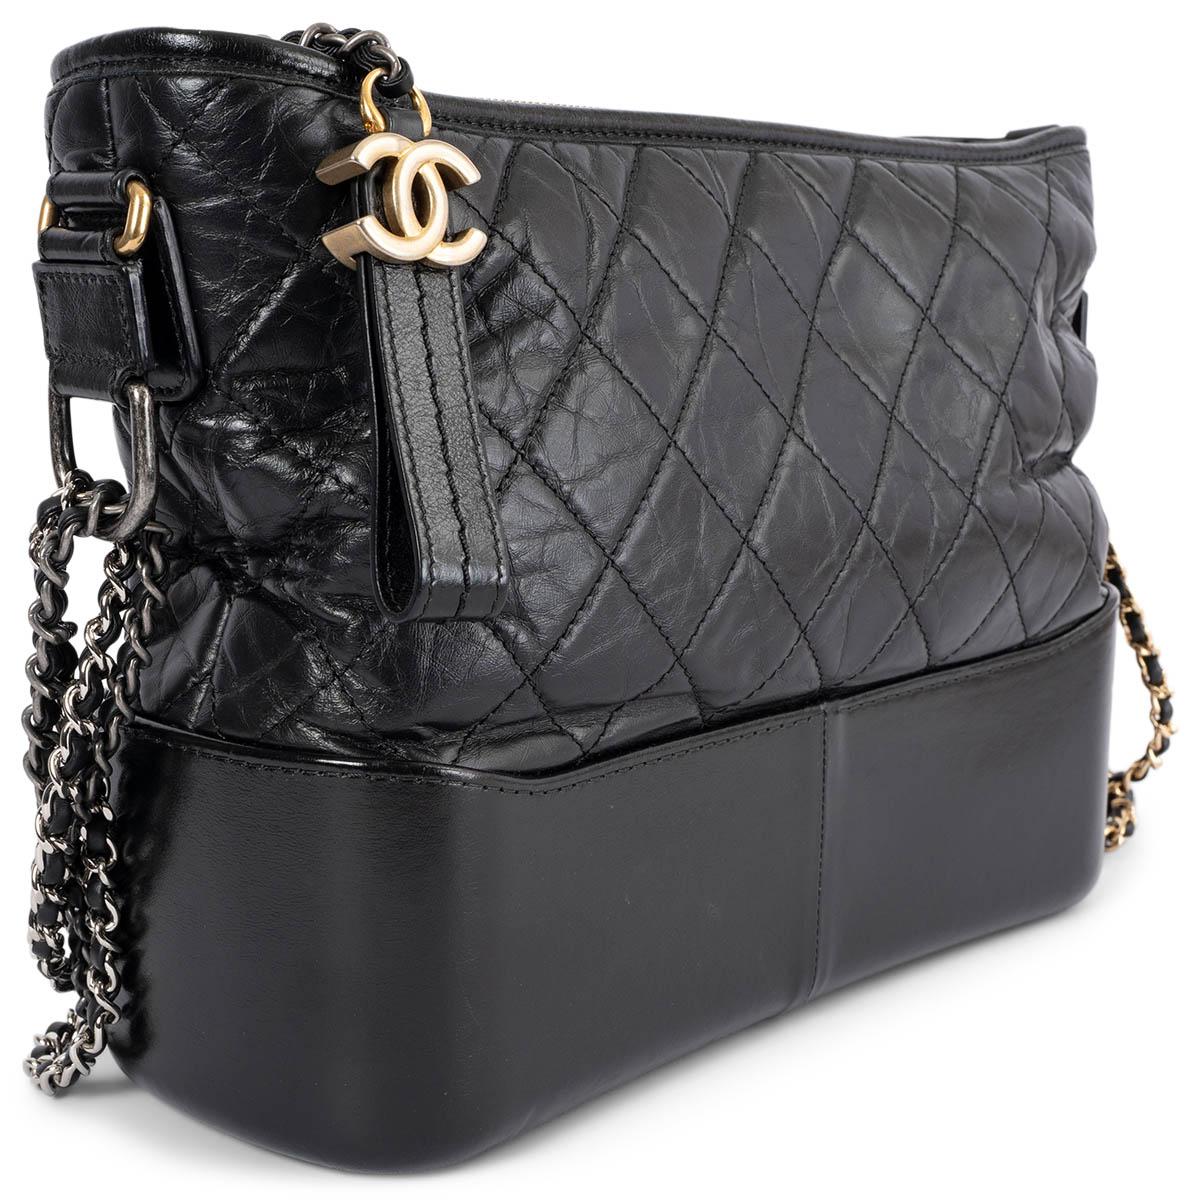 100% authentique Chanel Gabrielle Medium Hobo Bag en cuir de veau noir vieilli avec double chaîne en métal doré, argenté et ruthénium. Il s'ouvre par une fermeture à glissière CC sur le dessus et est doublé de tissu gros grain rouge. Il comporte une